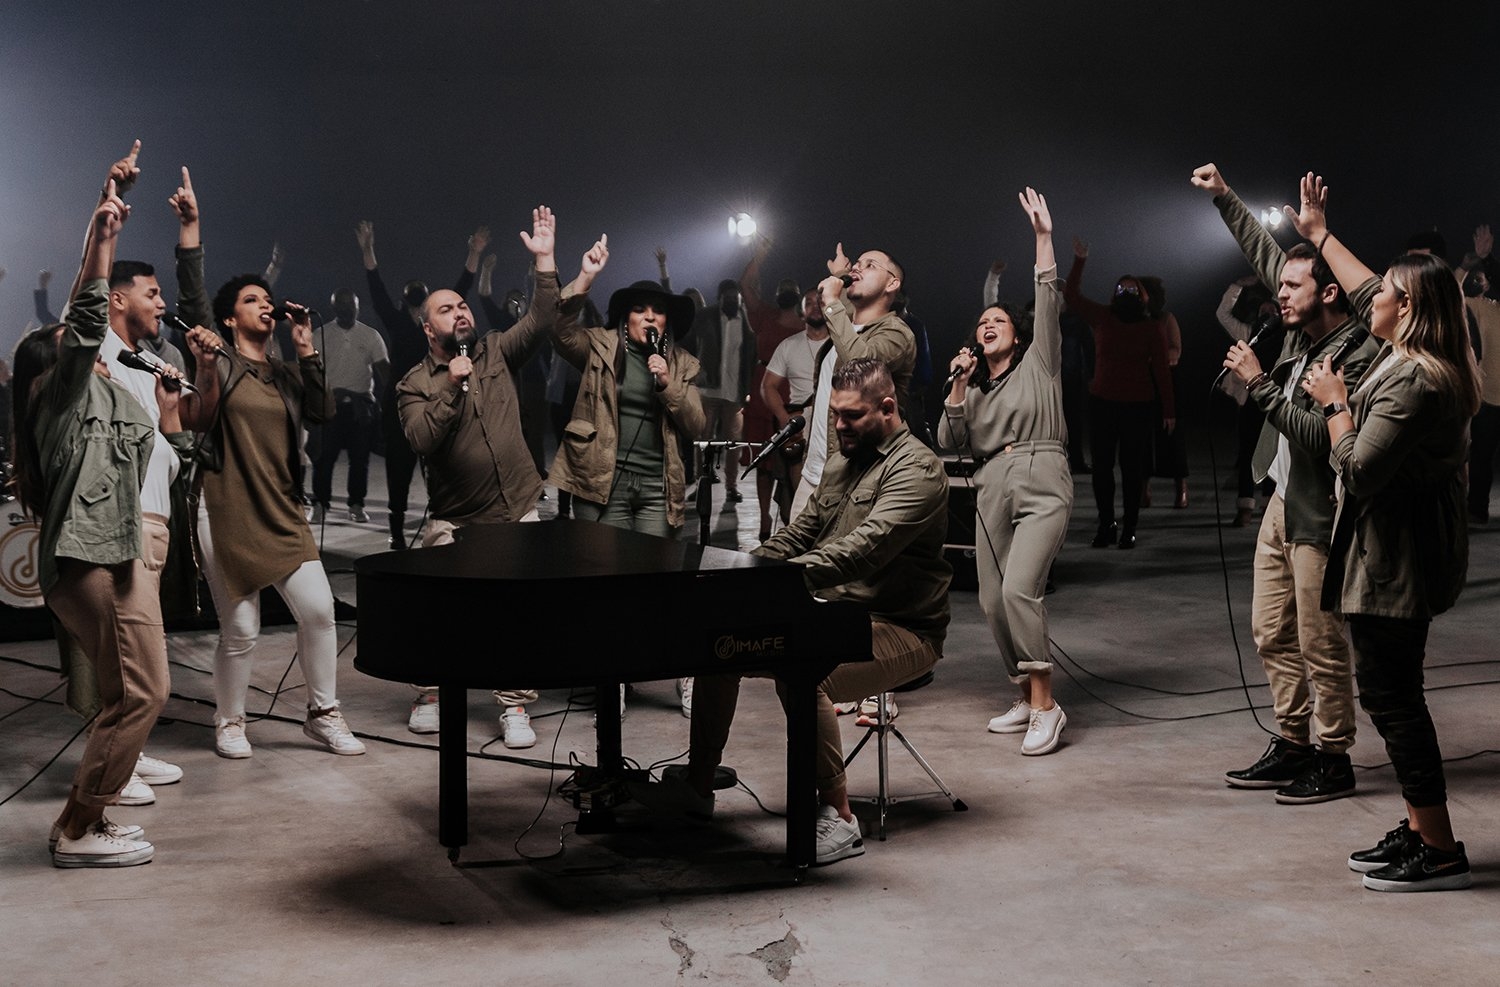 IMAFE Music estreia na Universal Music Christian com novo single